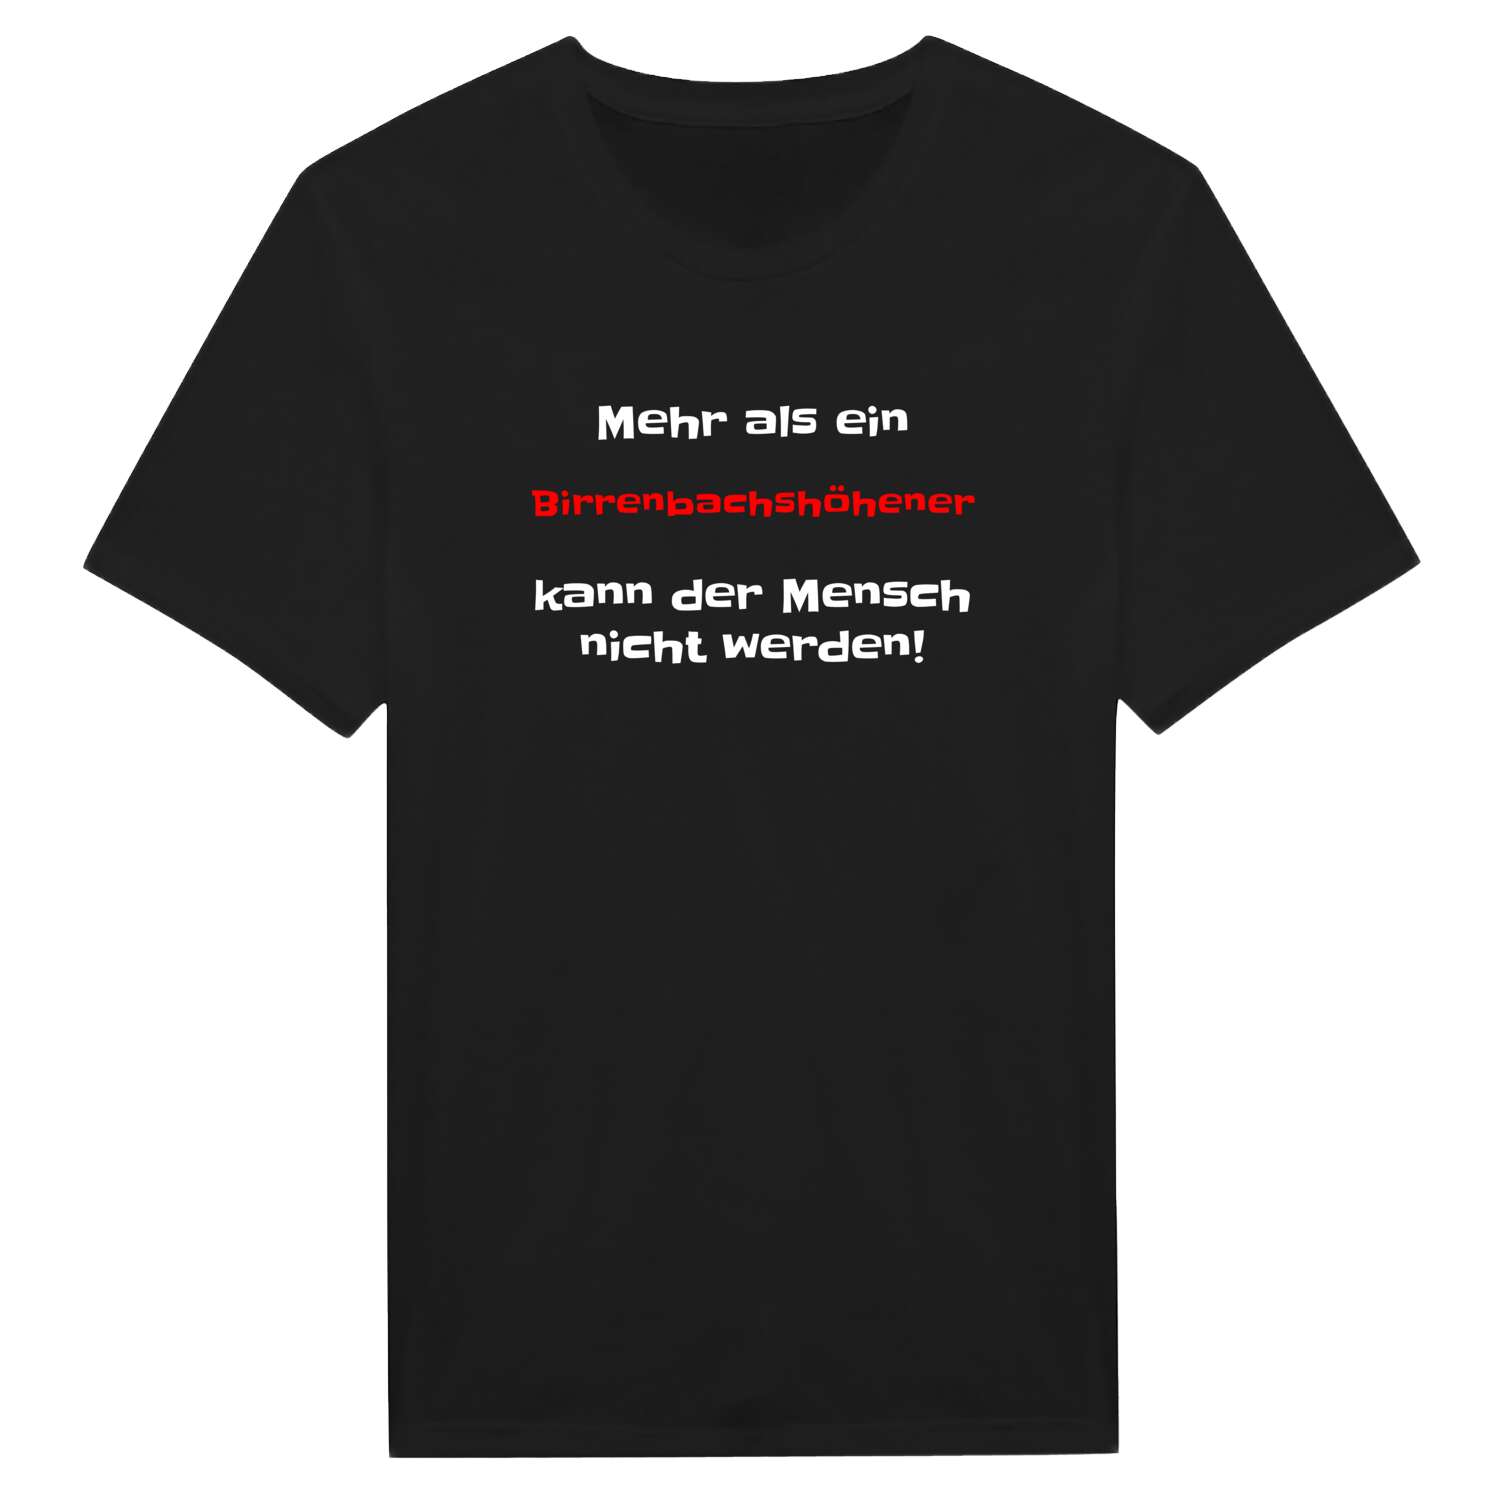 Birrenbachshöhe T-Shirt »Mehr als ein«